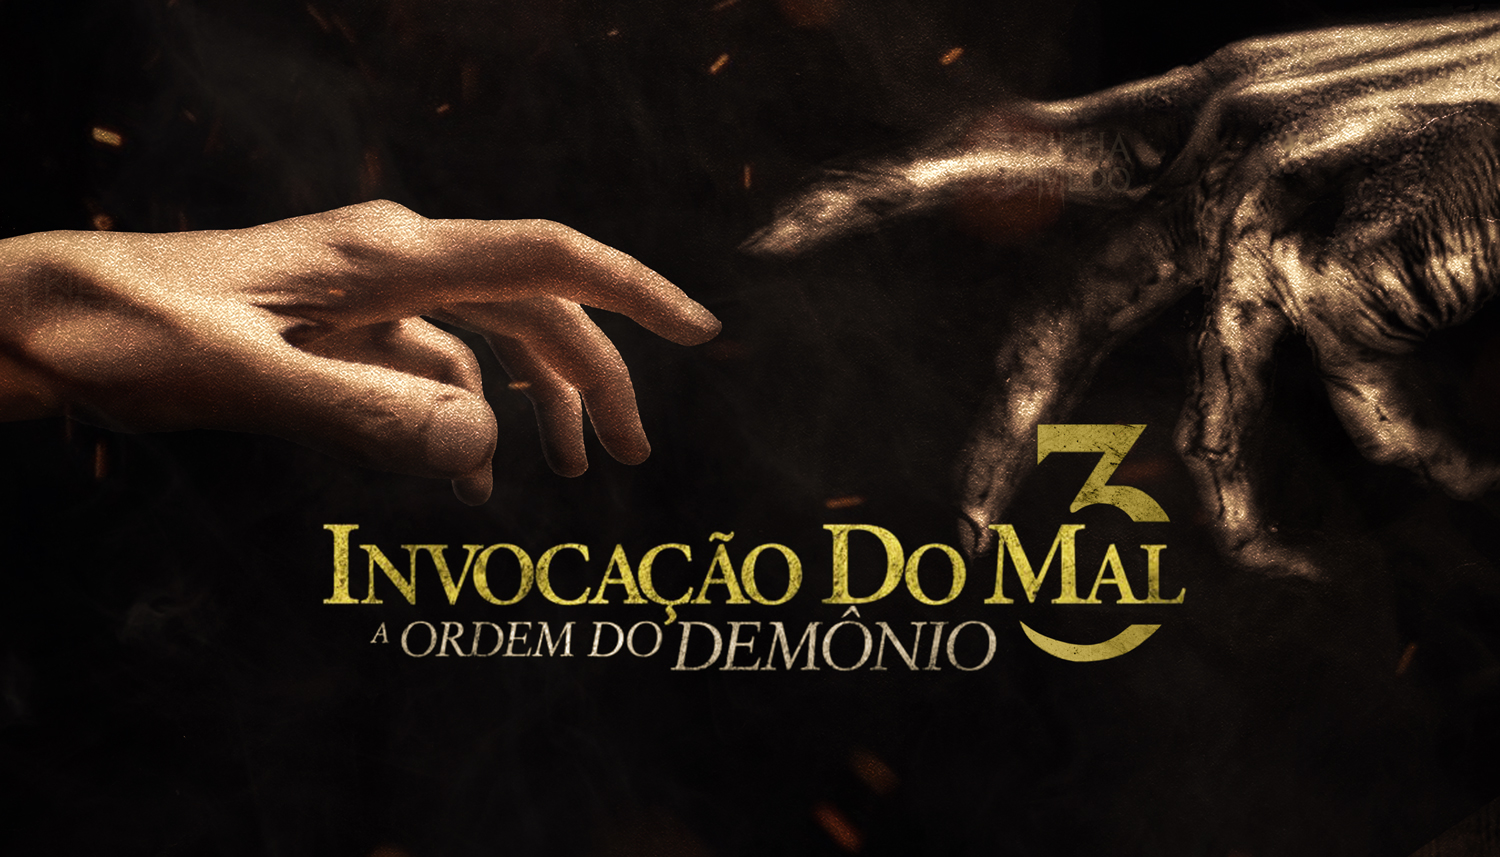 Tudo Sobre “Invocação do Mal 3” – Sinopse, Elenco e Imagens the conjuring 3 the devil made me do it poster